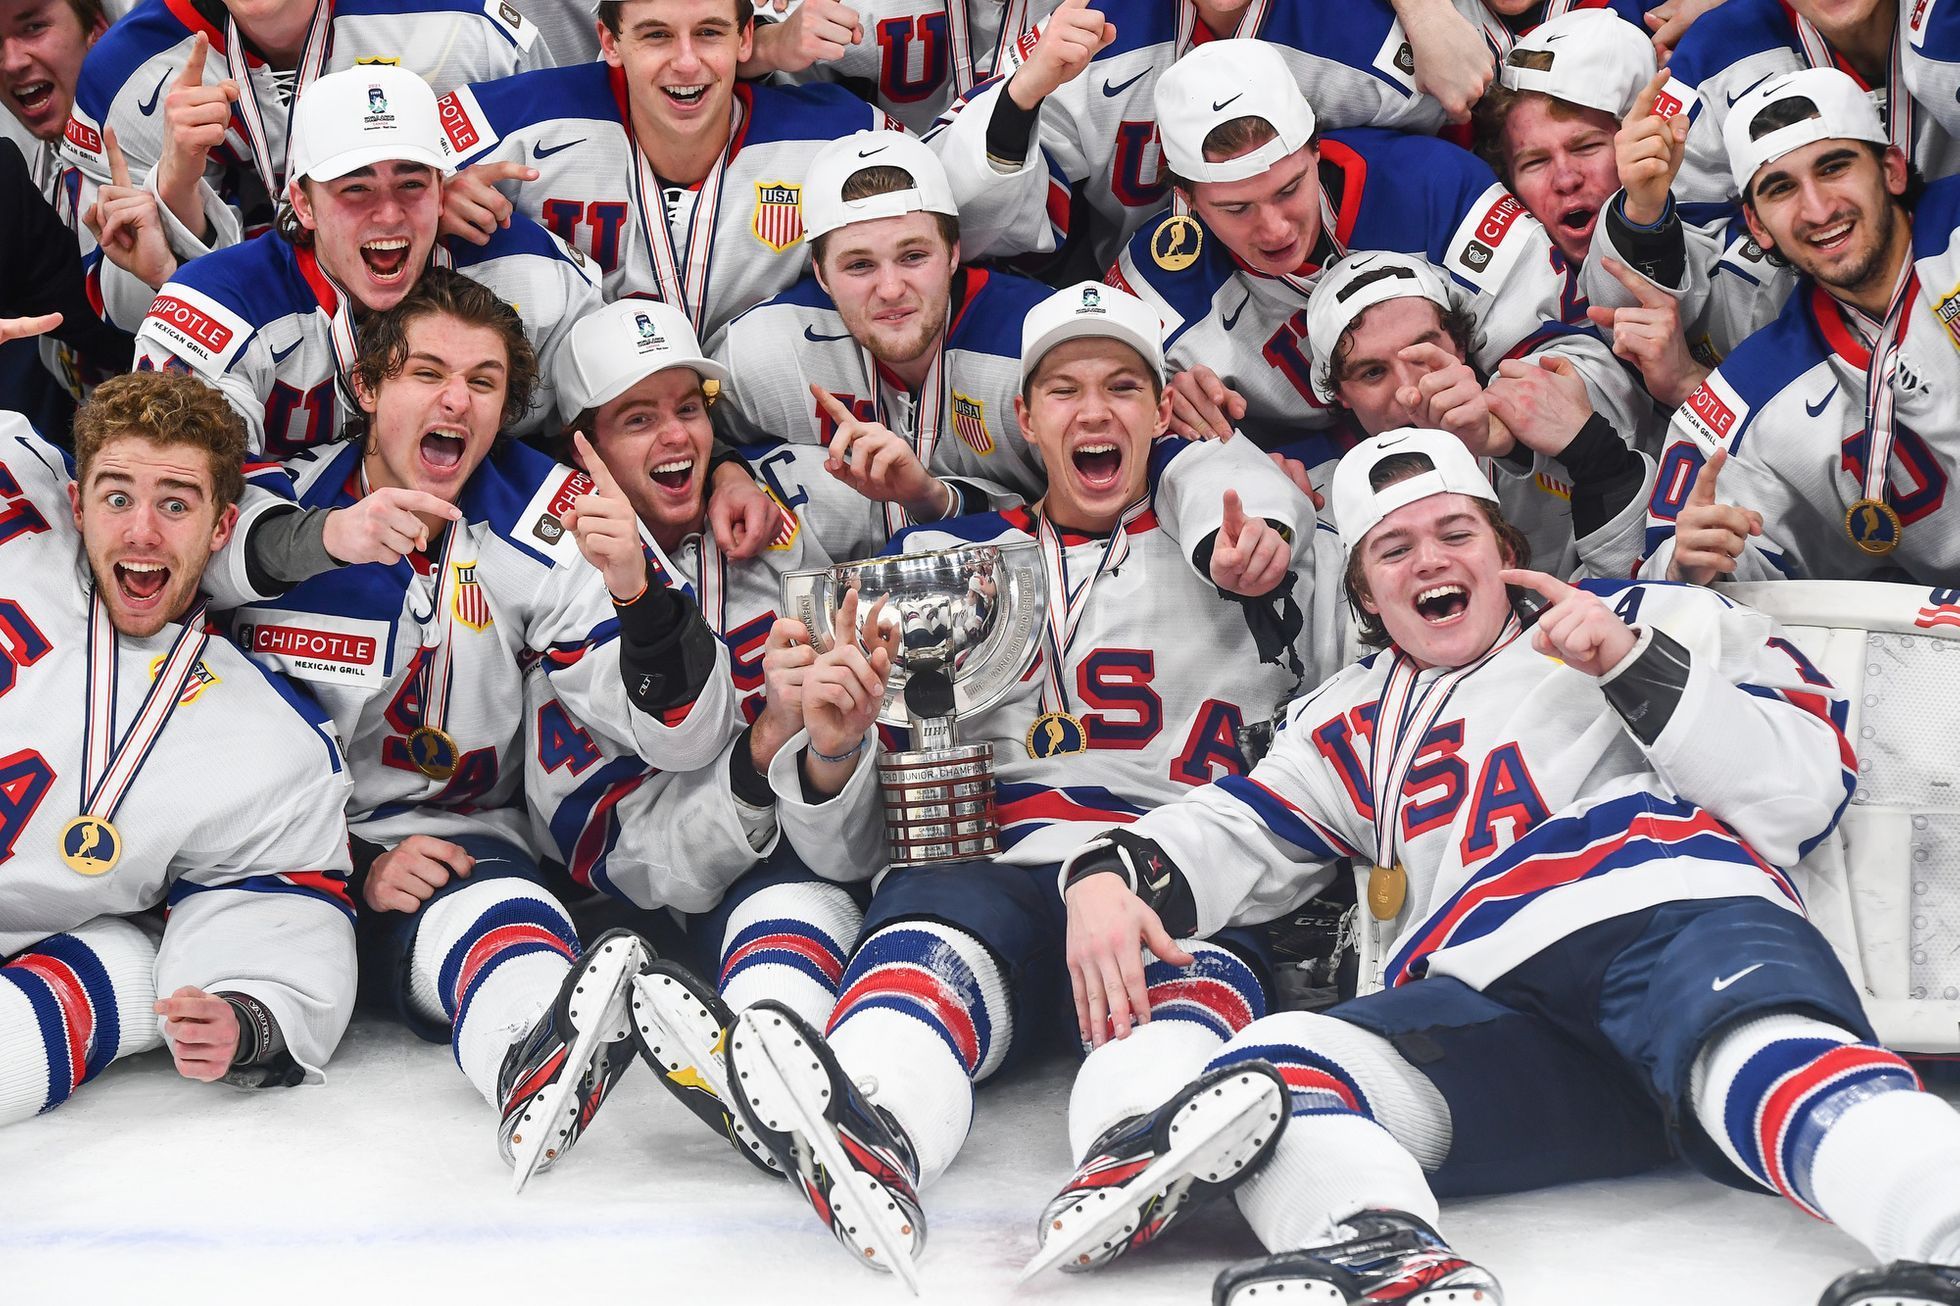 hokej, MS do 20 let, 2021, vítězný tým USA s trofejí